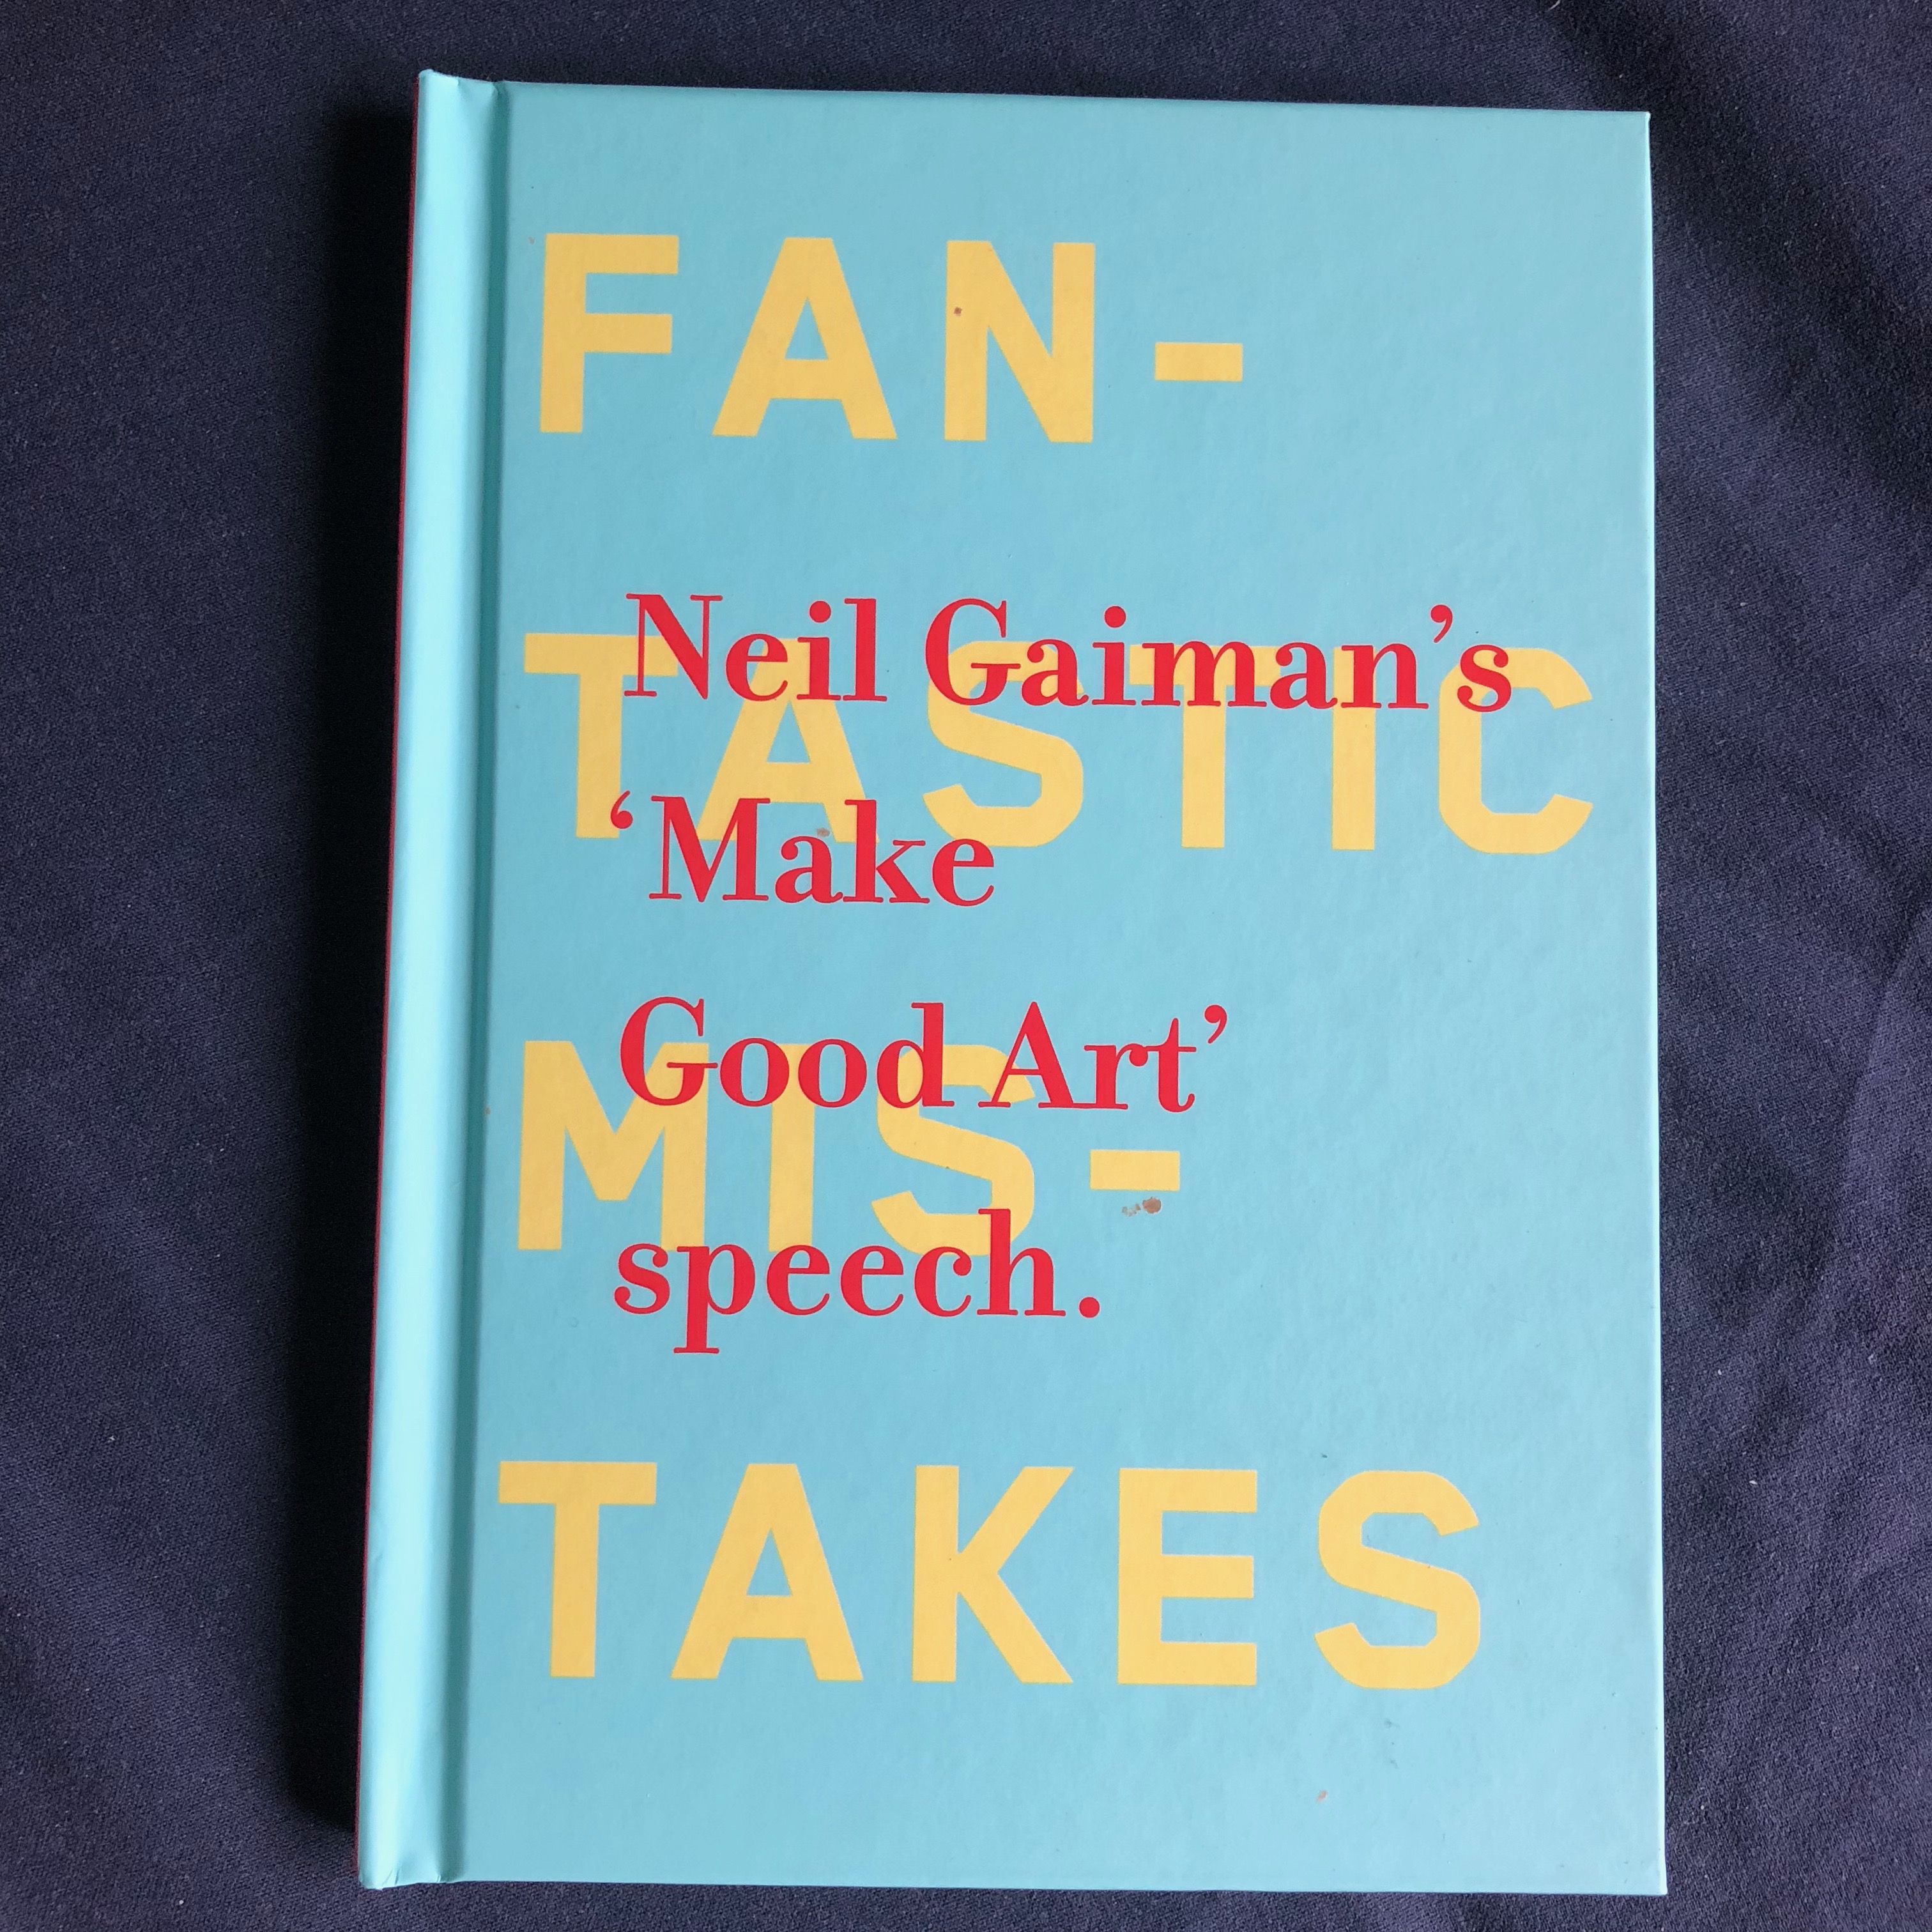 Neil Gaiman’s ‘Make Good Art’ speech